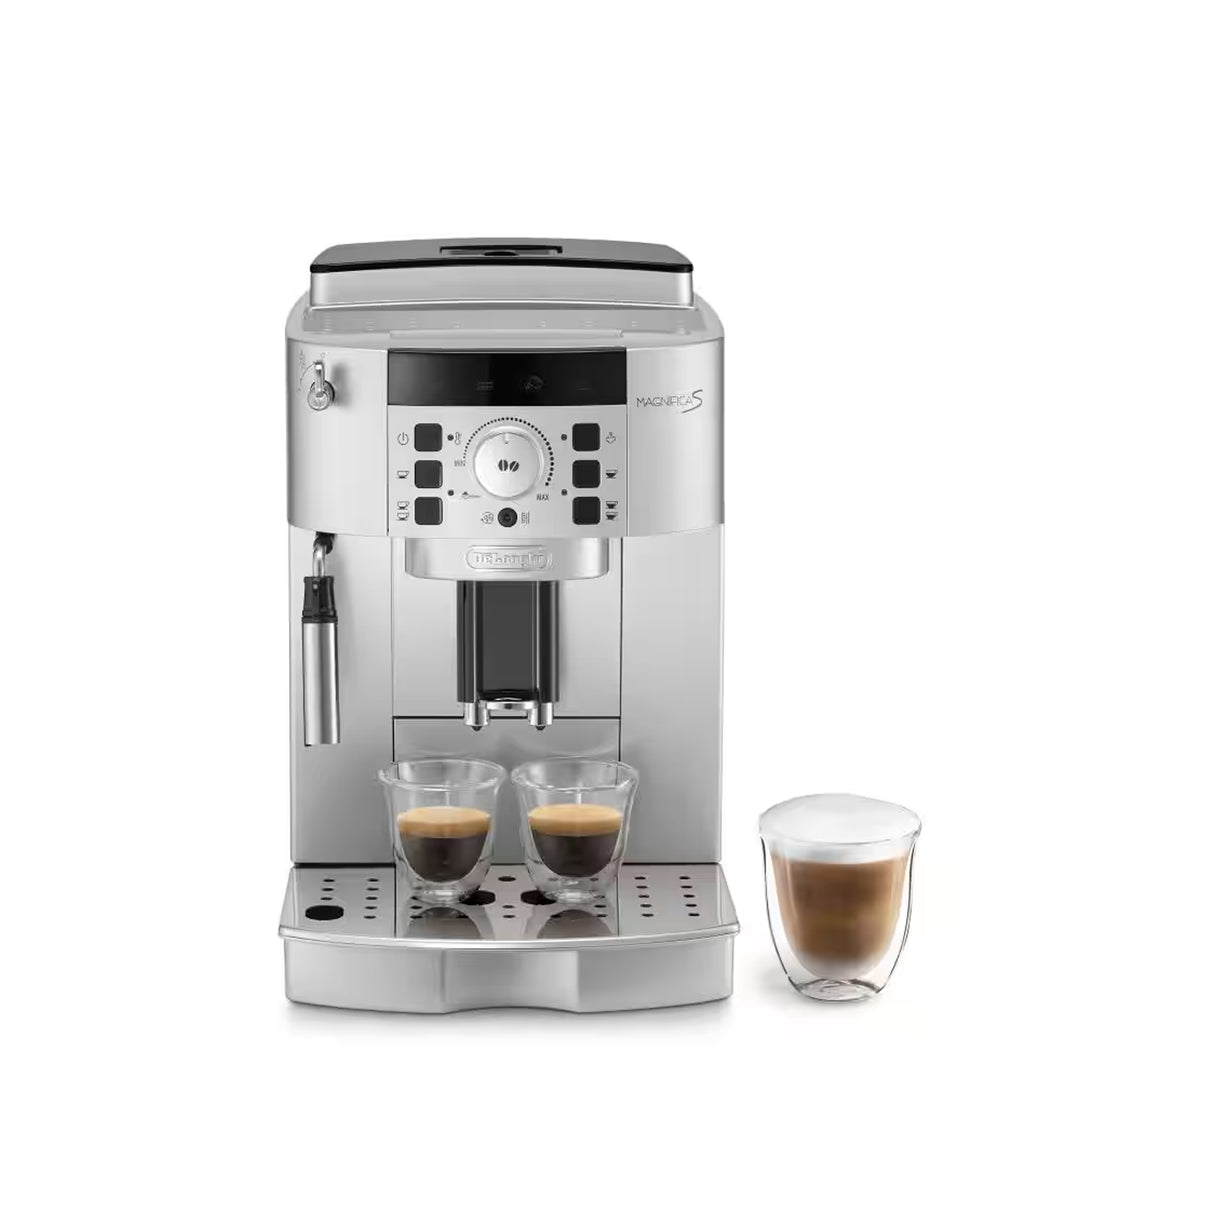 Delonghi ECAM 22.110.SB - 1450 Watts Super Automatic Magnifica Espresso Coffee Maker (Silver)